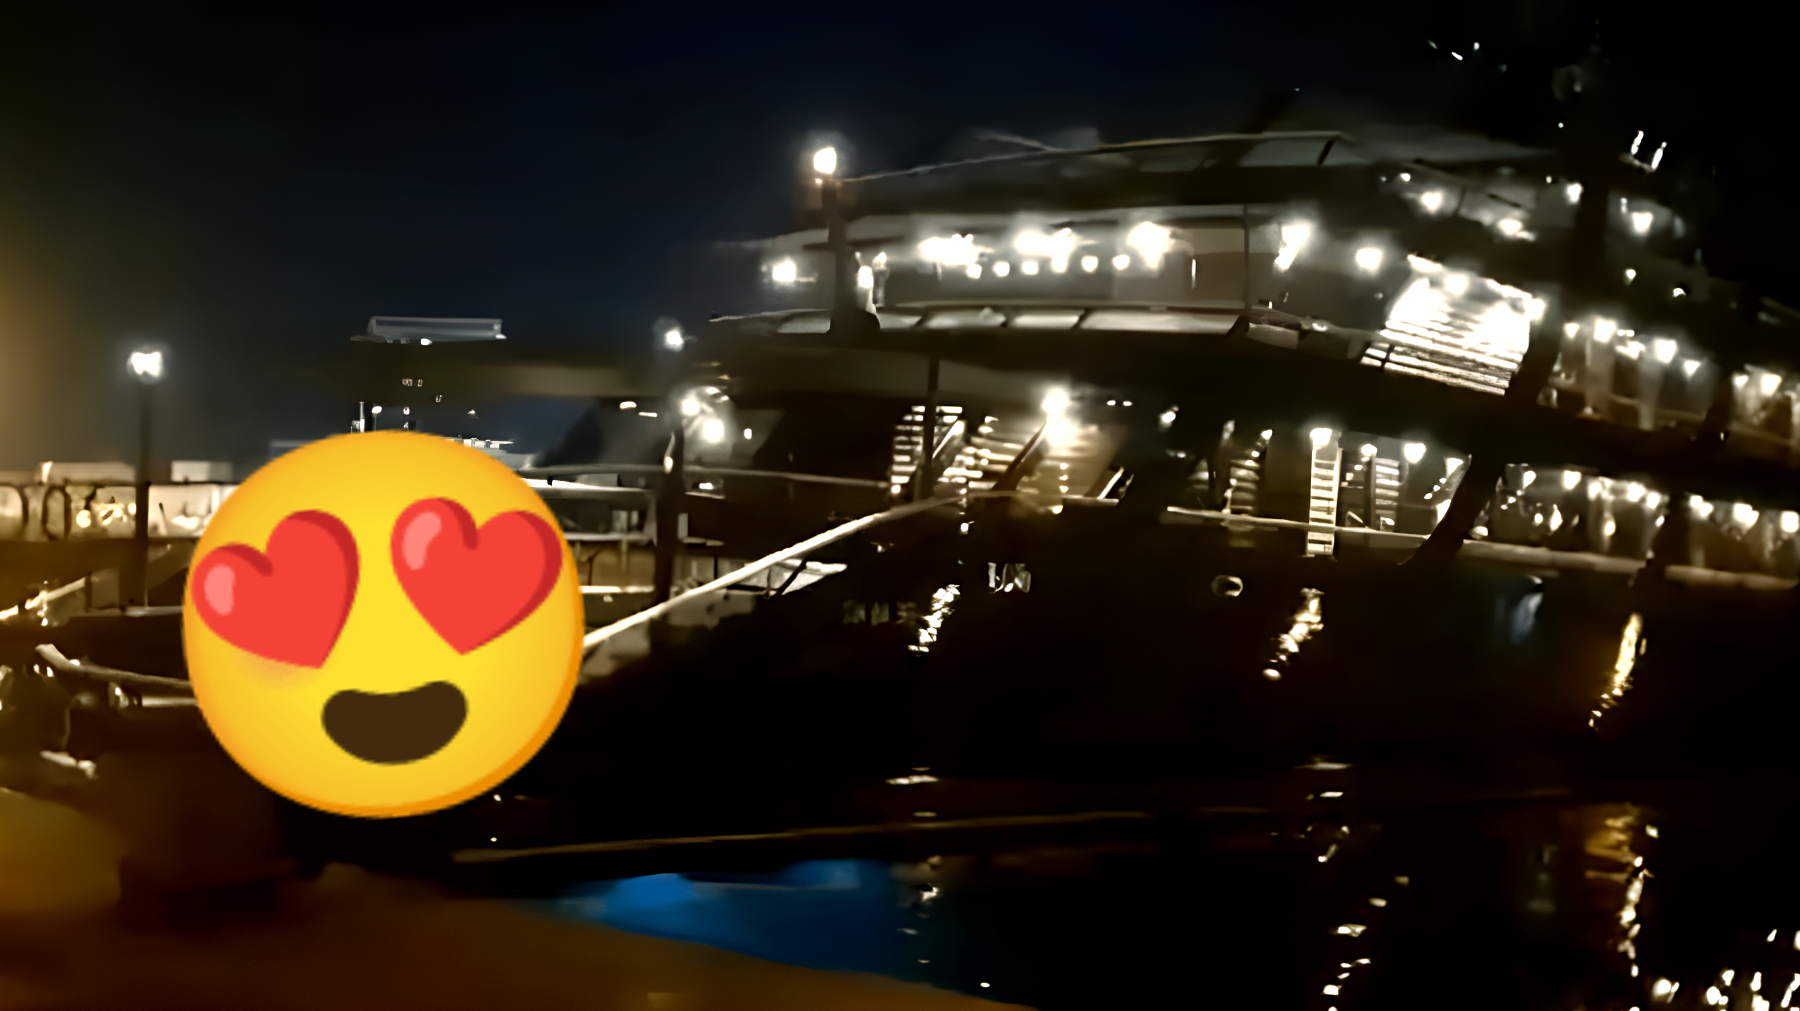 L'incredibile "Megayacht da 65 m di Armani" è approdato nelle acque di Gallipoli: guarda com'è fatto dentro e quanto vale! [VIDEO]